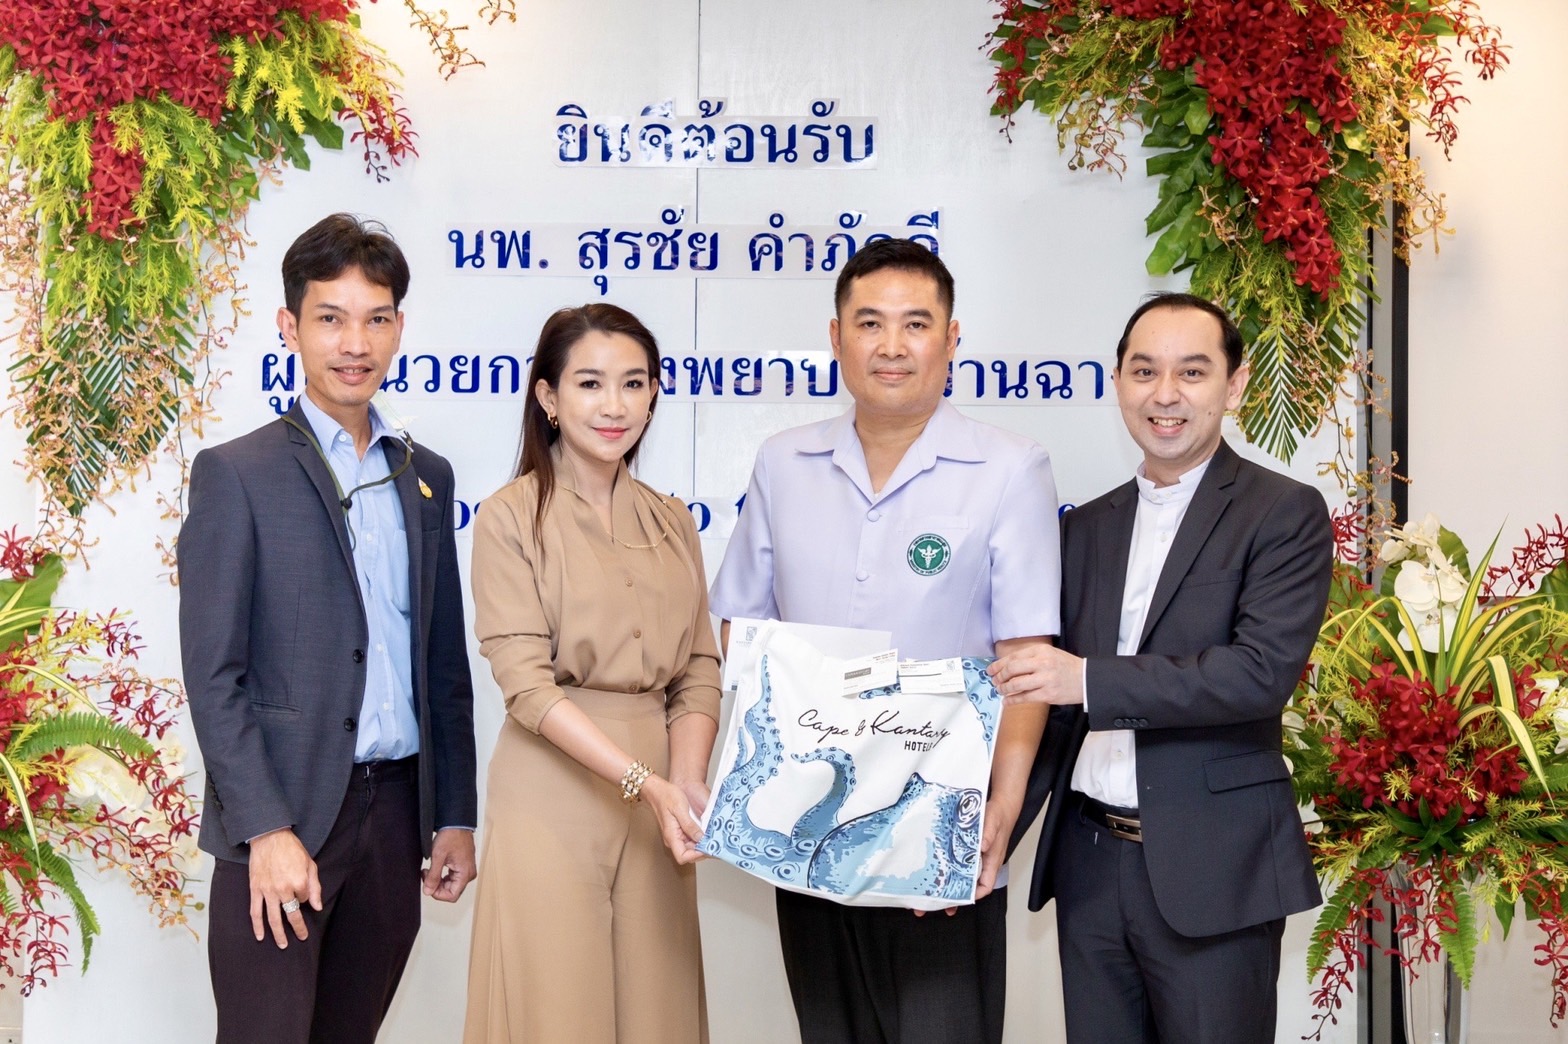 ข่าวโรงแรม, ที่พัก - Cape & Kantary Hotels Congratulates Dr.Surachai Kampakdee on the occasion of his being appointed Director of Ban Chang Hospital